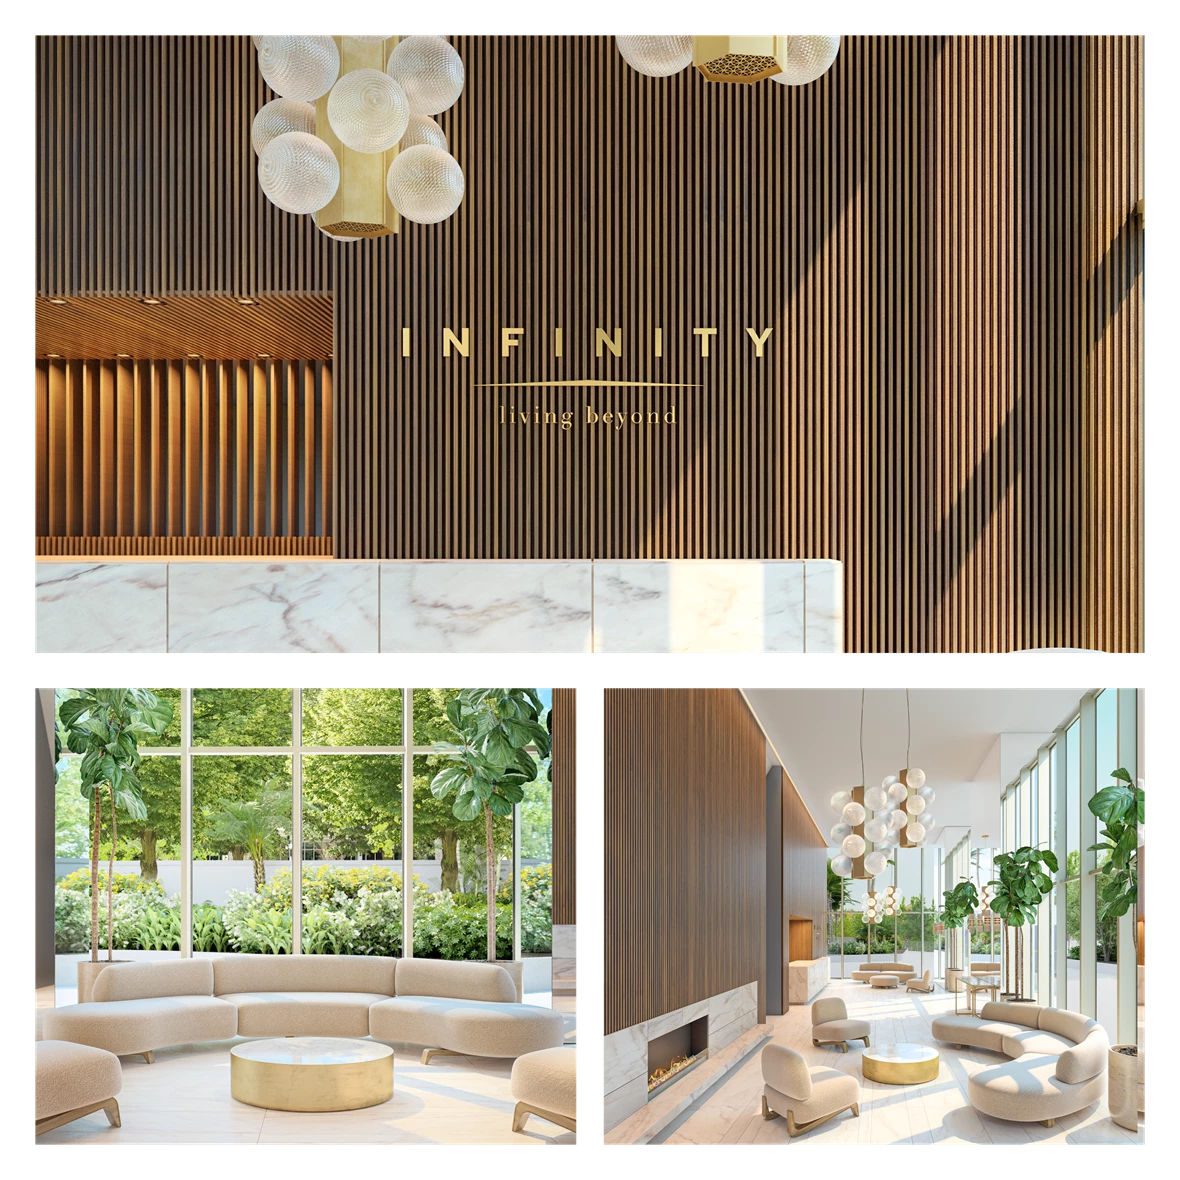 Infinity - Vanguard Properties